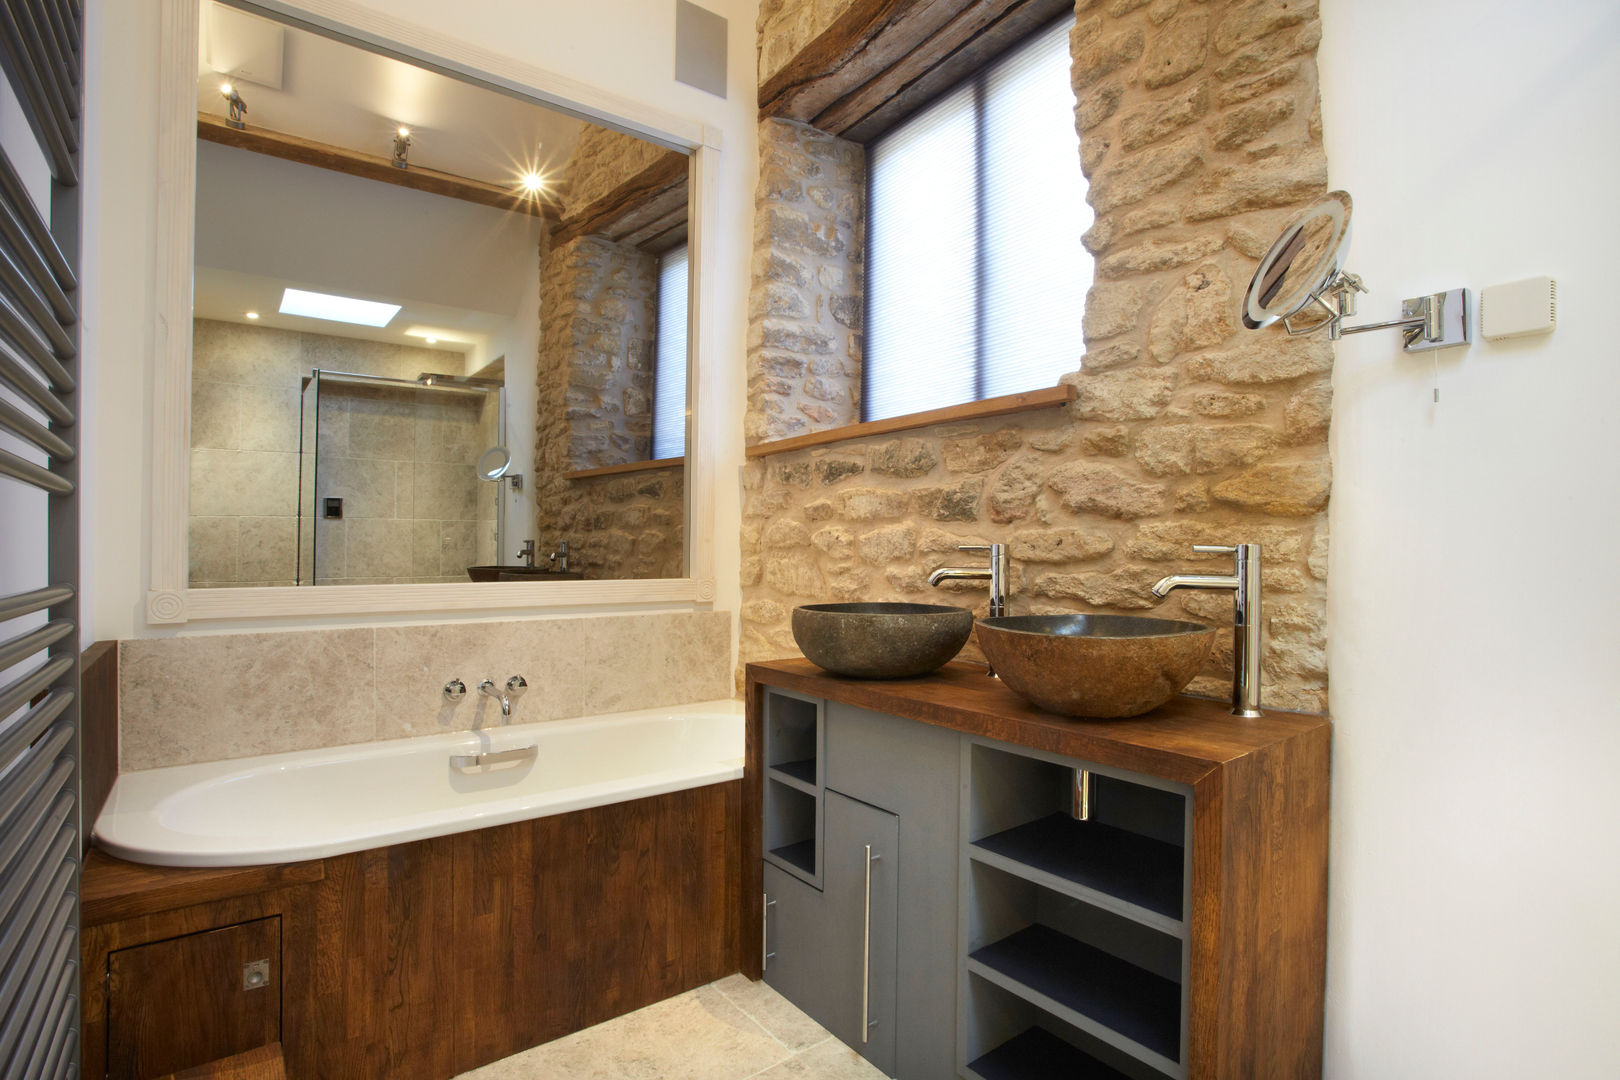 baños con madera y piedra: una increíble combinación